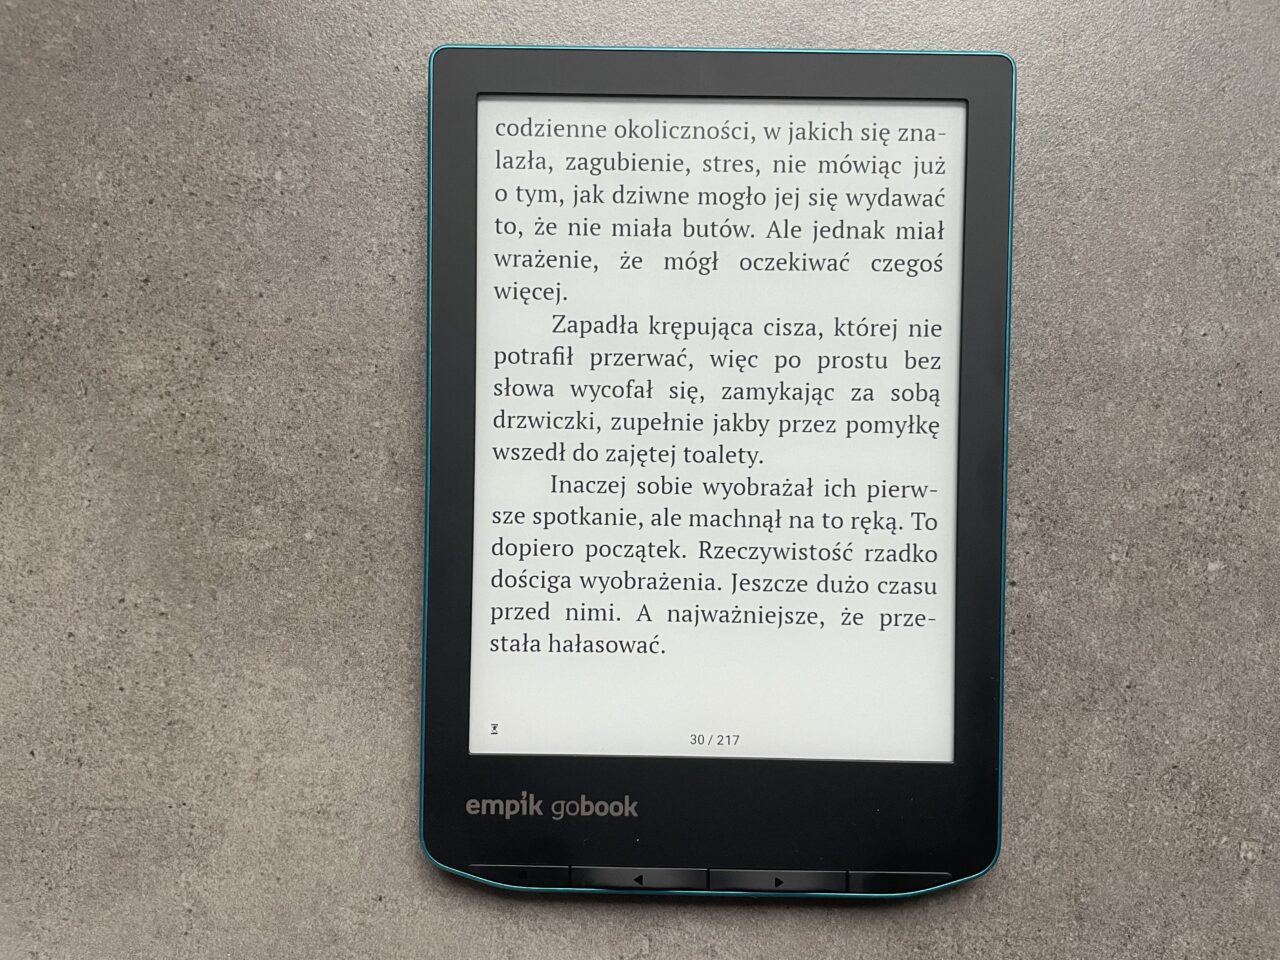 Czytnik ebooków marki Empik leżący na szarym tle, na ekranie wyświetlona strona z tekstem w języku polskim.